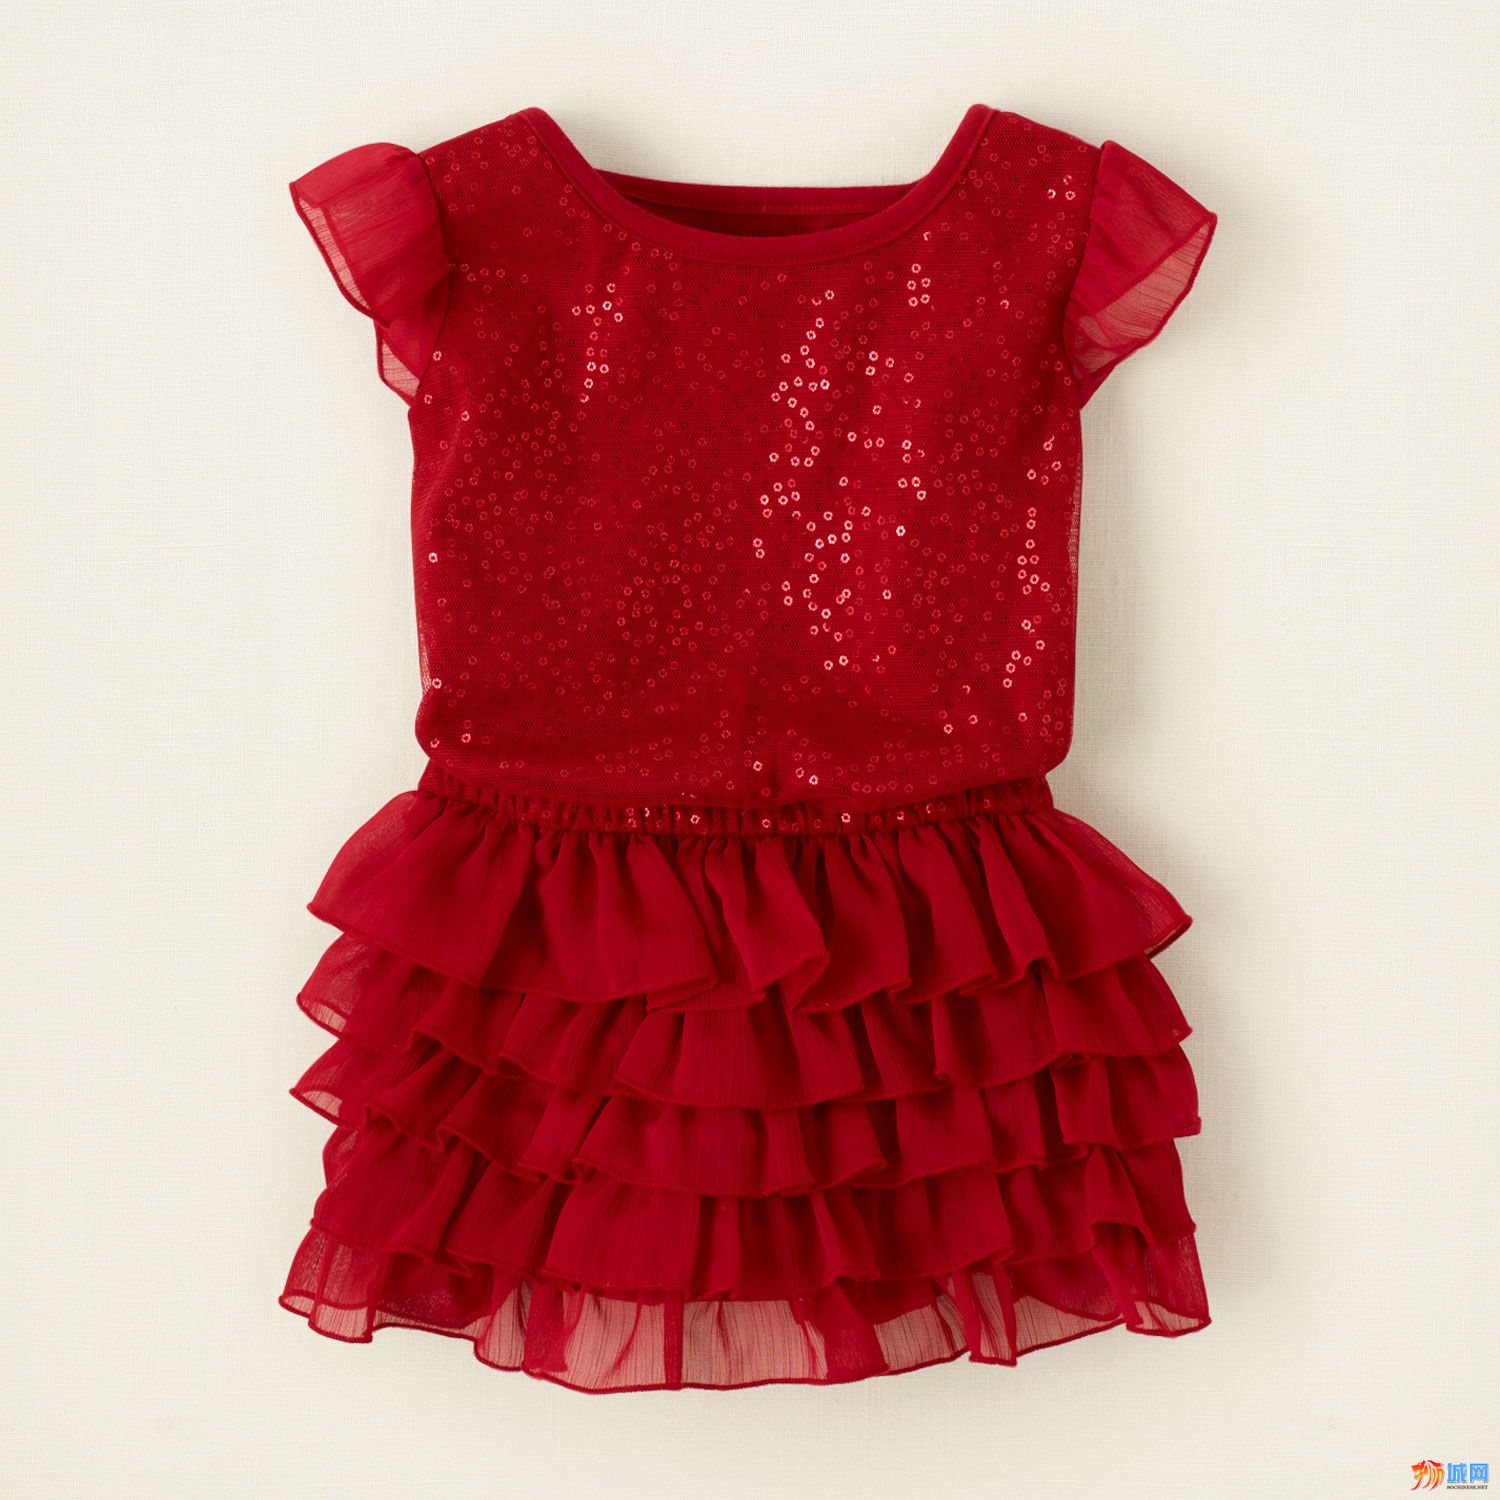 小款大红亮片裙.jpg